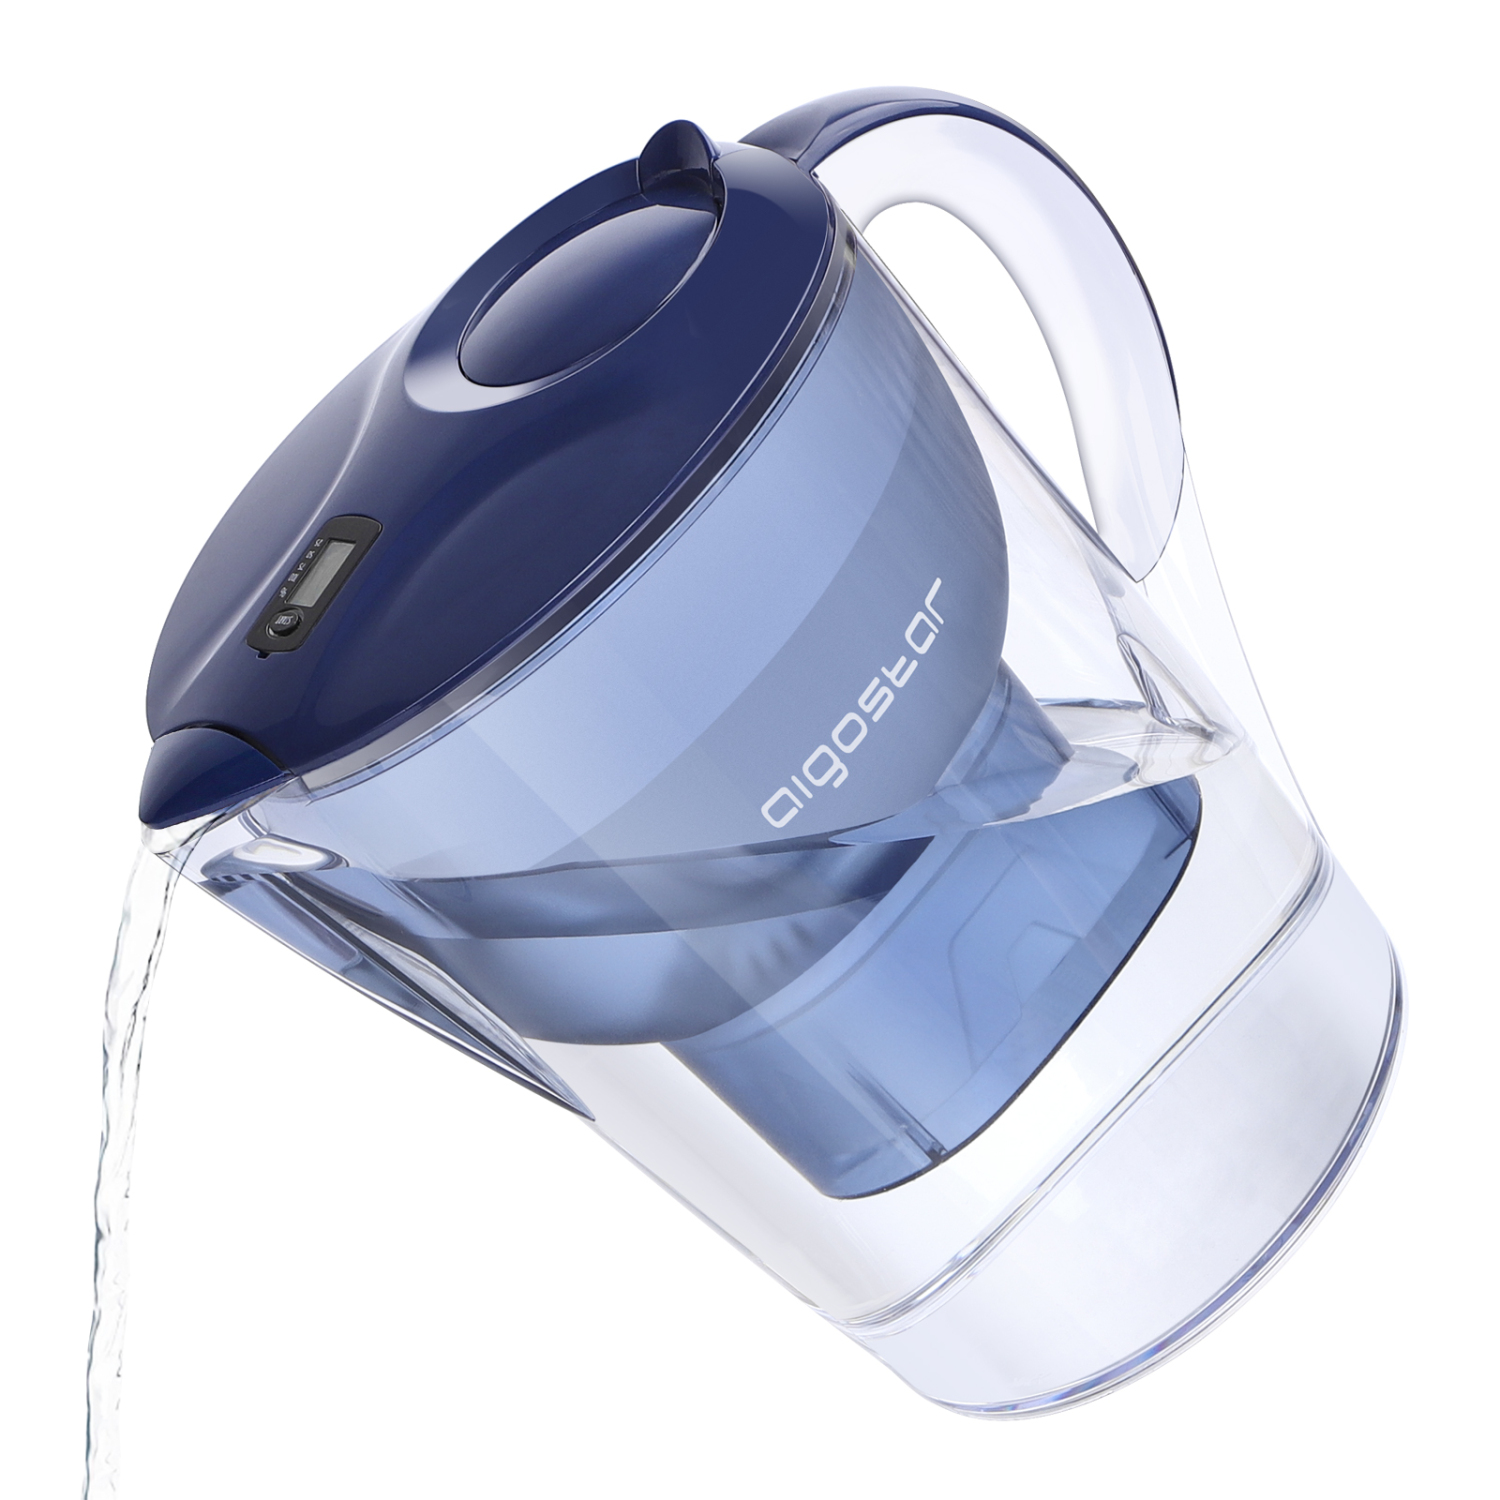 Aigostar Pure 30LDV - Jarra de agua filtrada de 3,5L, 3 filtros incluídos, uso por filtro hasta 60 días, pantalla LCD con estado del filtro y el filtrado. Libre de BPA. Color azul. Diseño exclusivo.